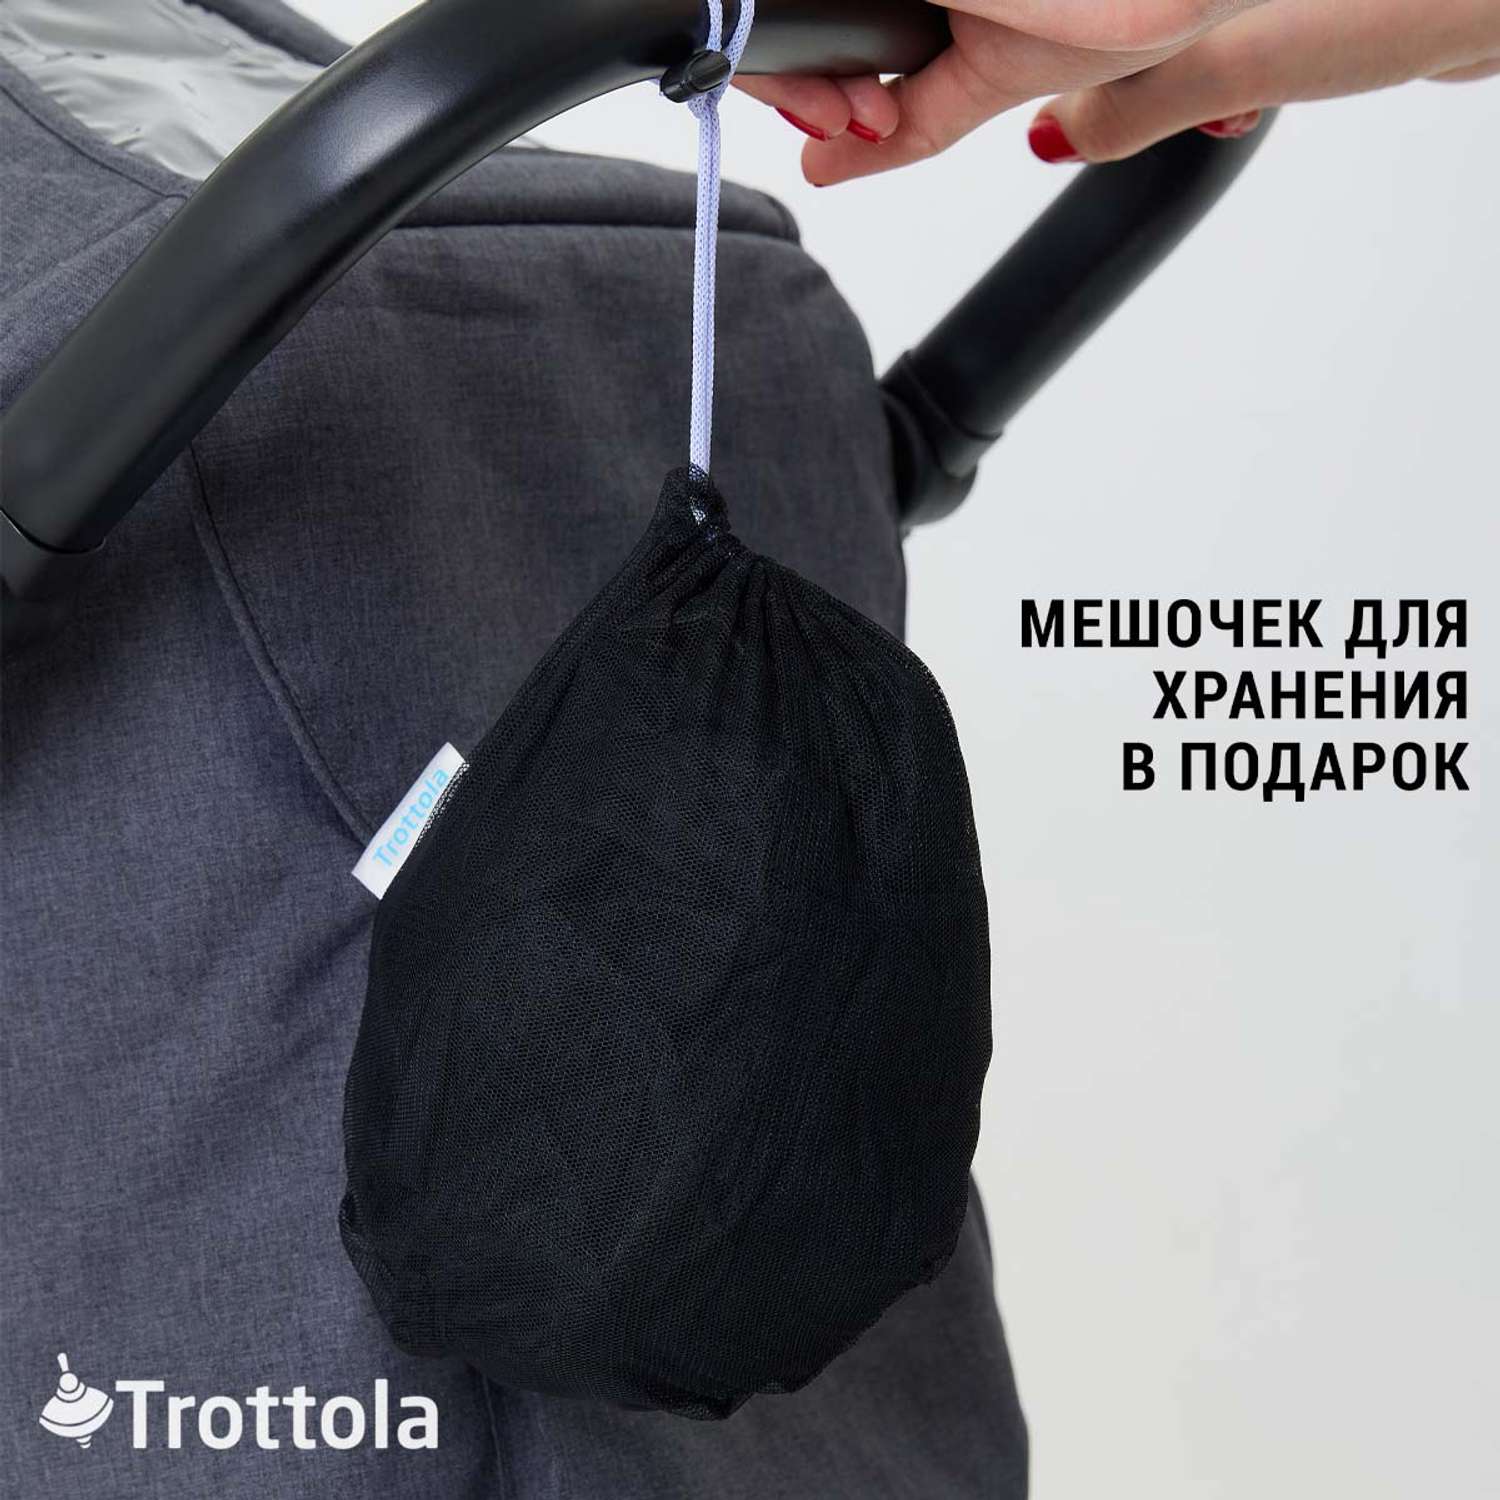 Москитная сетка Trottola черная на прогулочную коляску с мешочком Т040/черная - фото 8